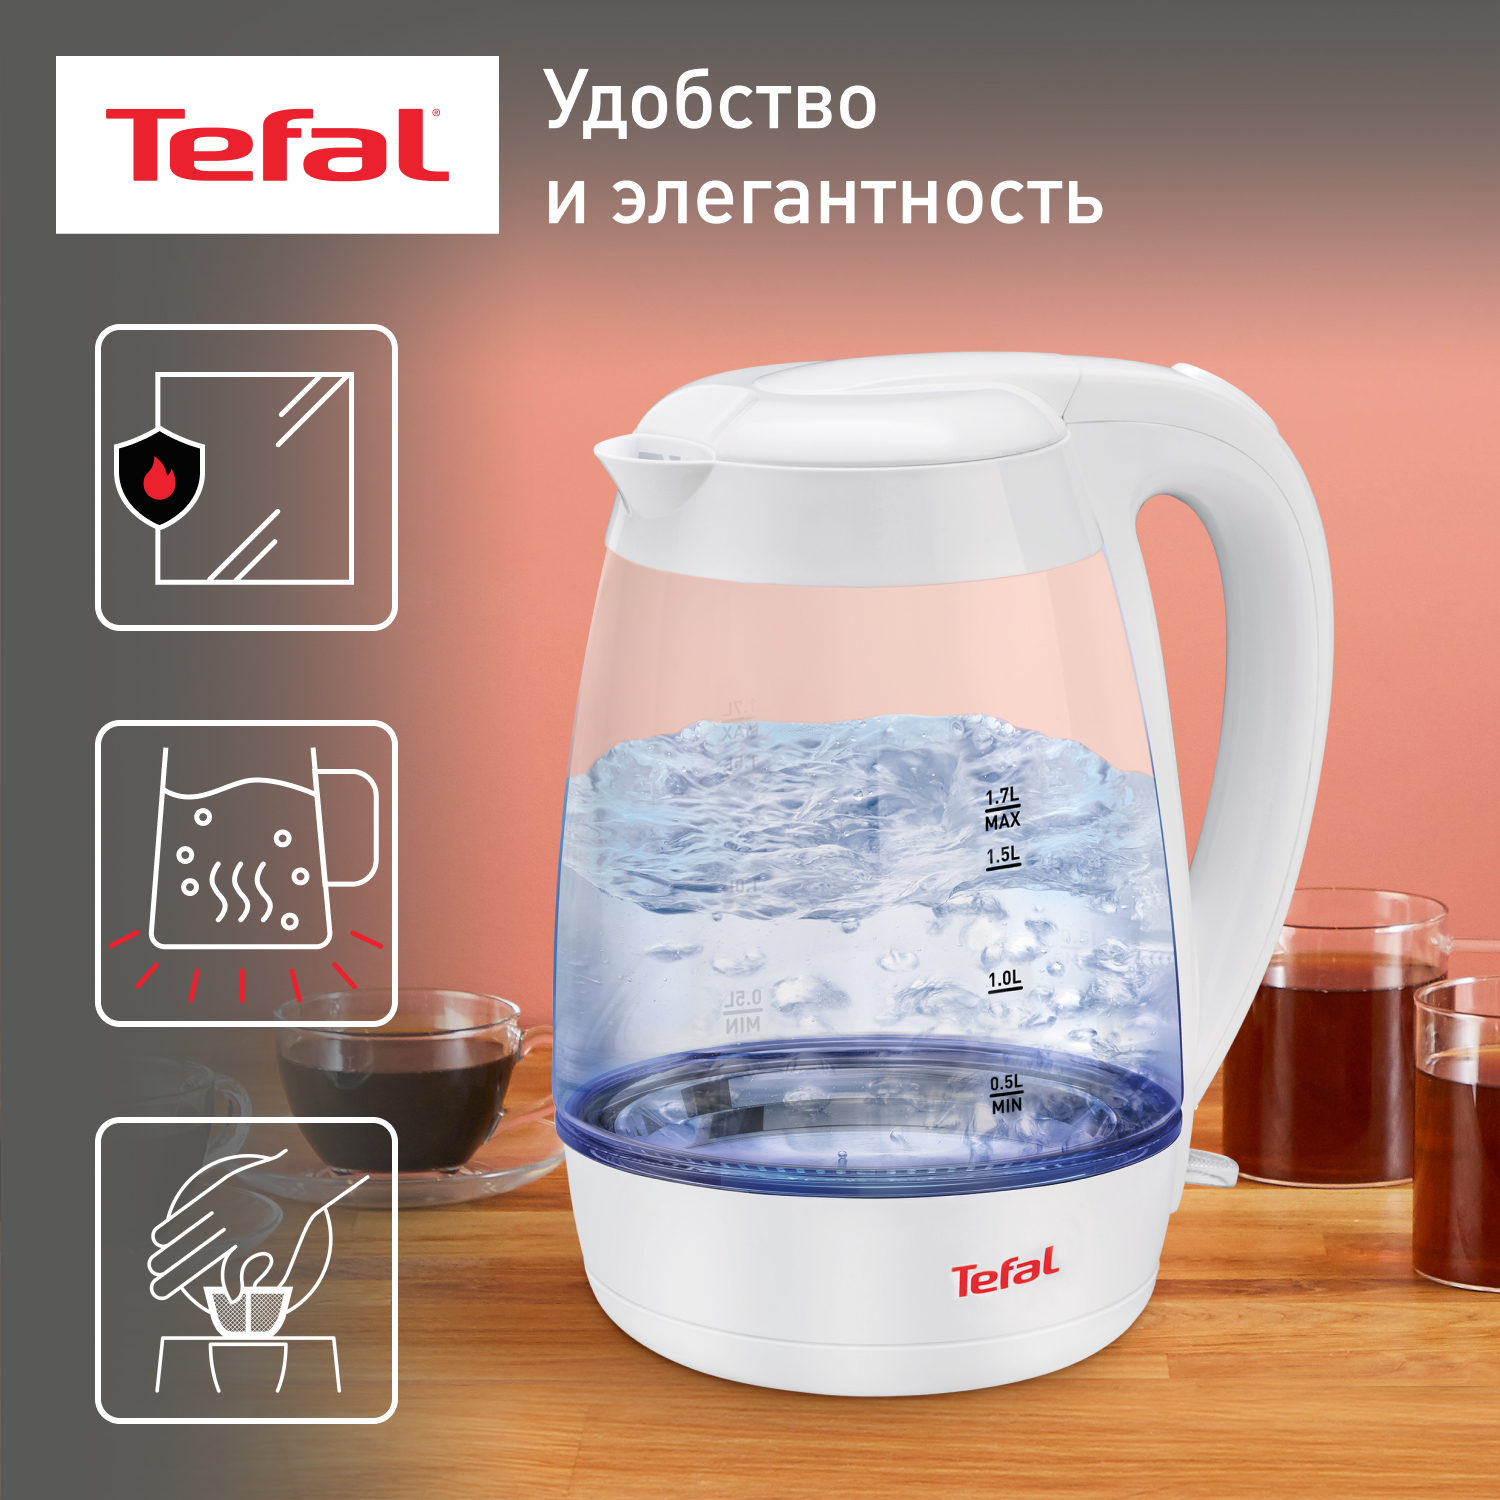 Чайник электрический Tefal KO450132 1.7 л белый фен tefal hv5700d8 2200 вт